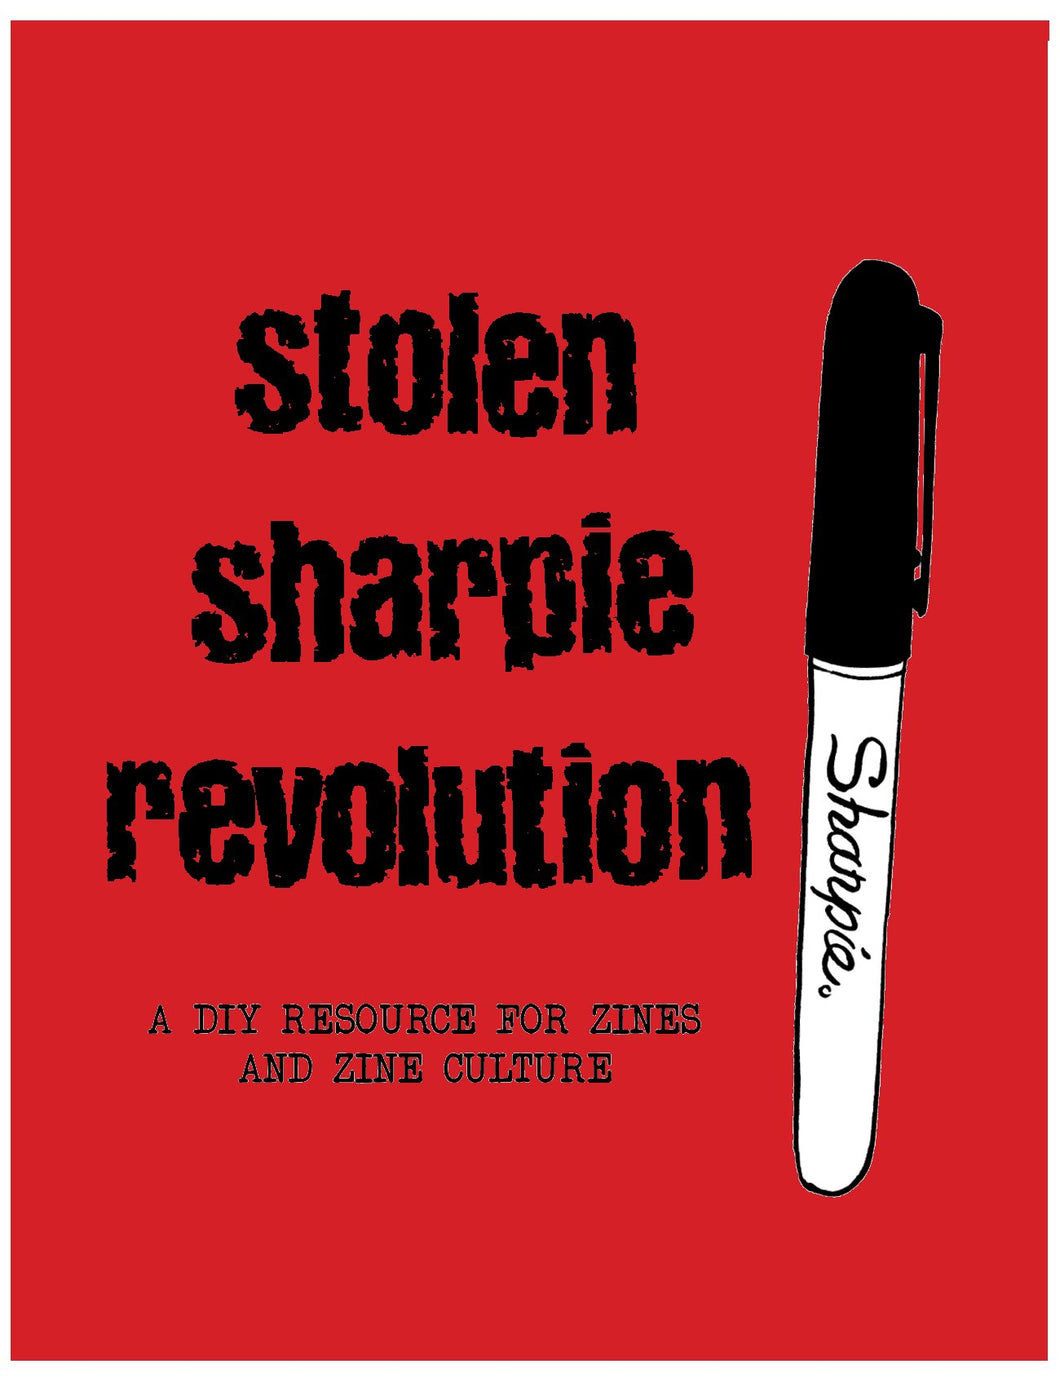 Stolen Sharpie Revolution: a DIY Resource For Zines and Zine Culture by Alex Wrekk